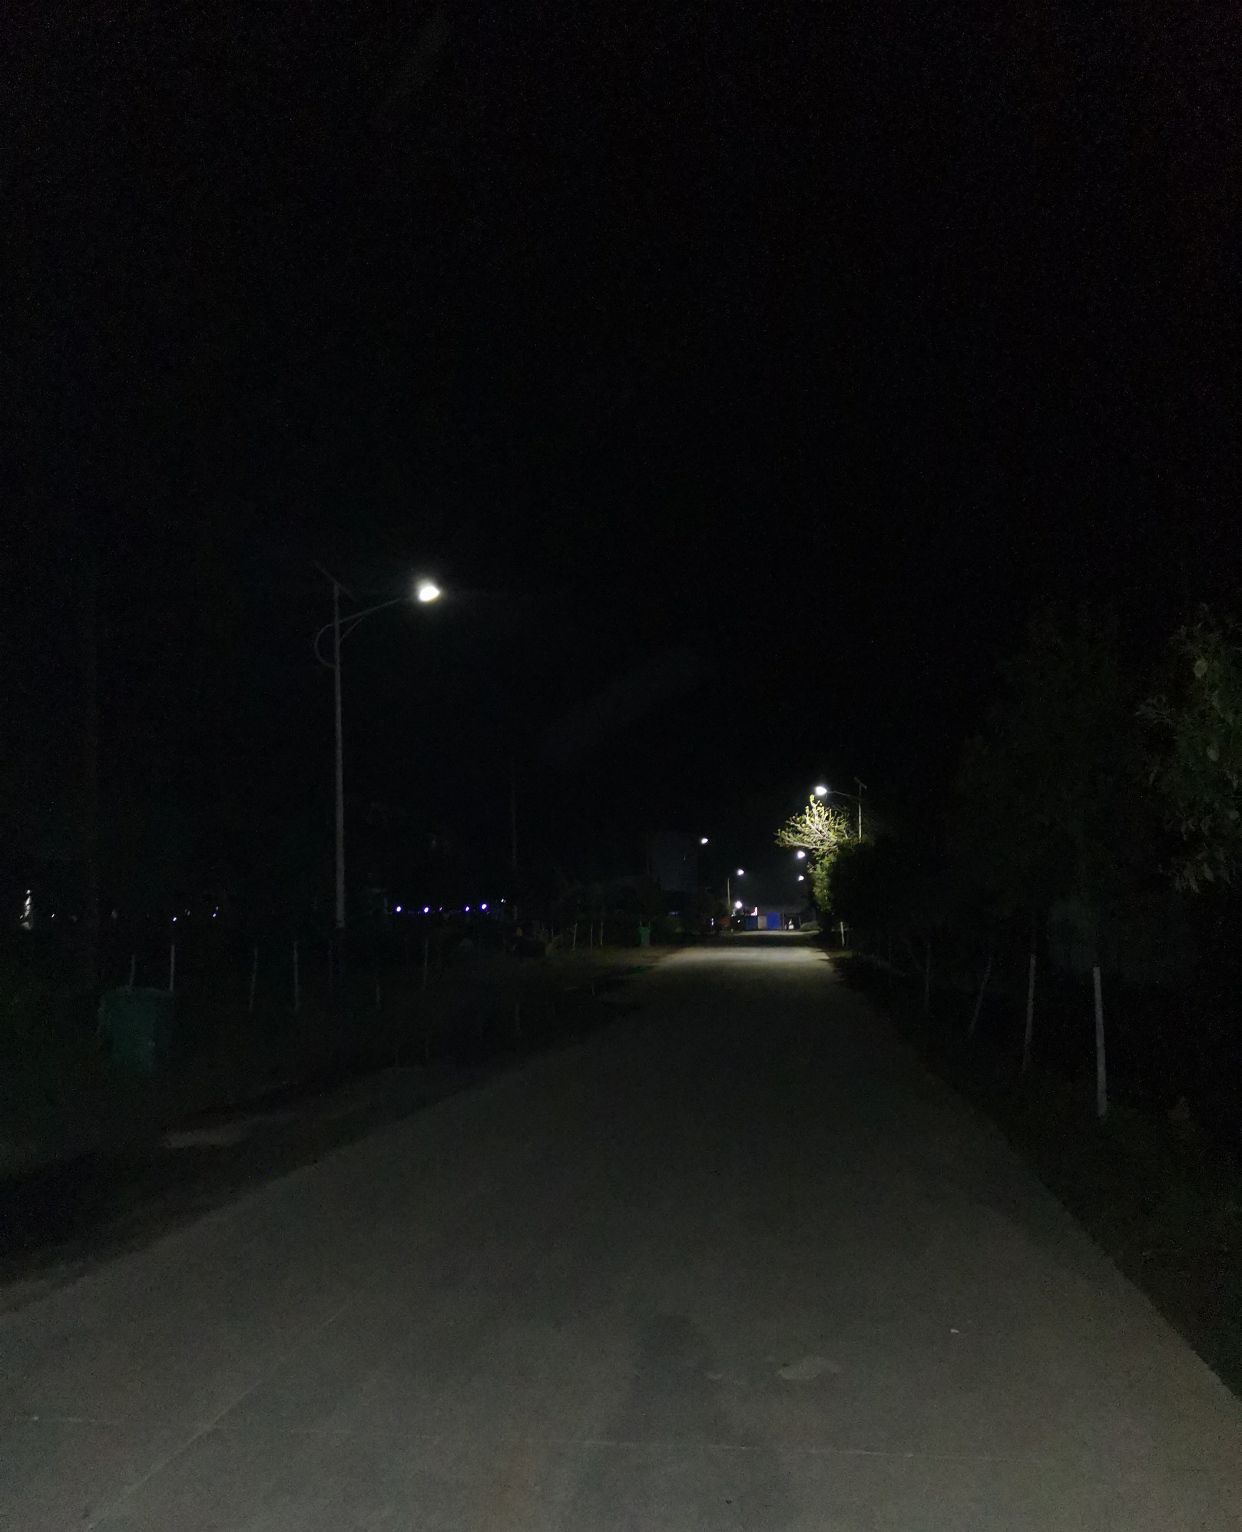 农村夜晚9点钟,马路两旁路灯很明亮,路上空无一人,显得格外宁